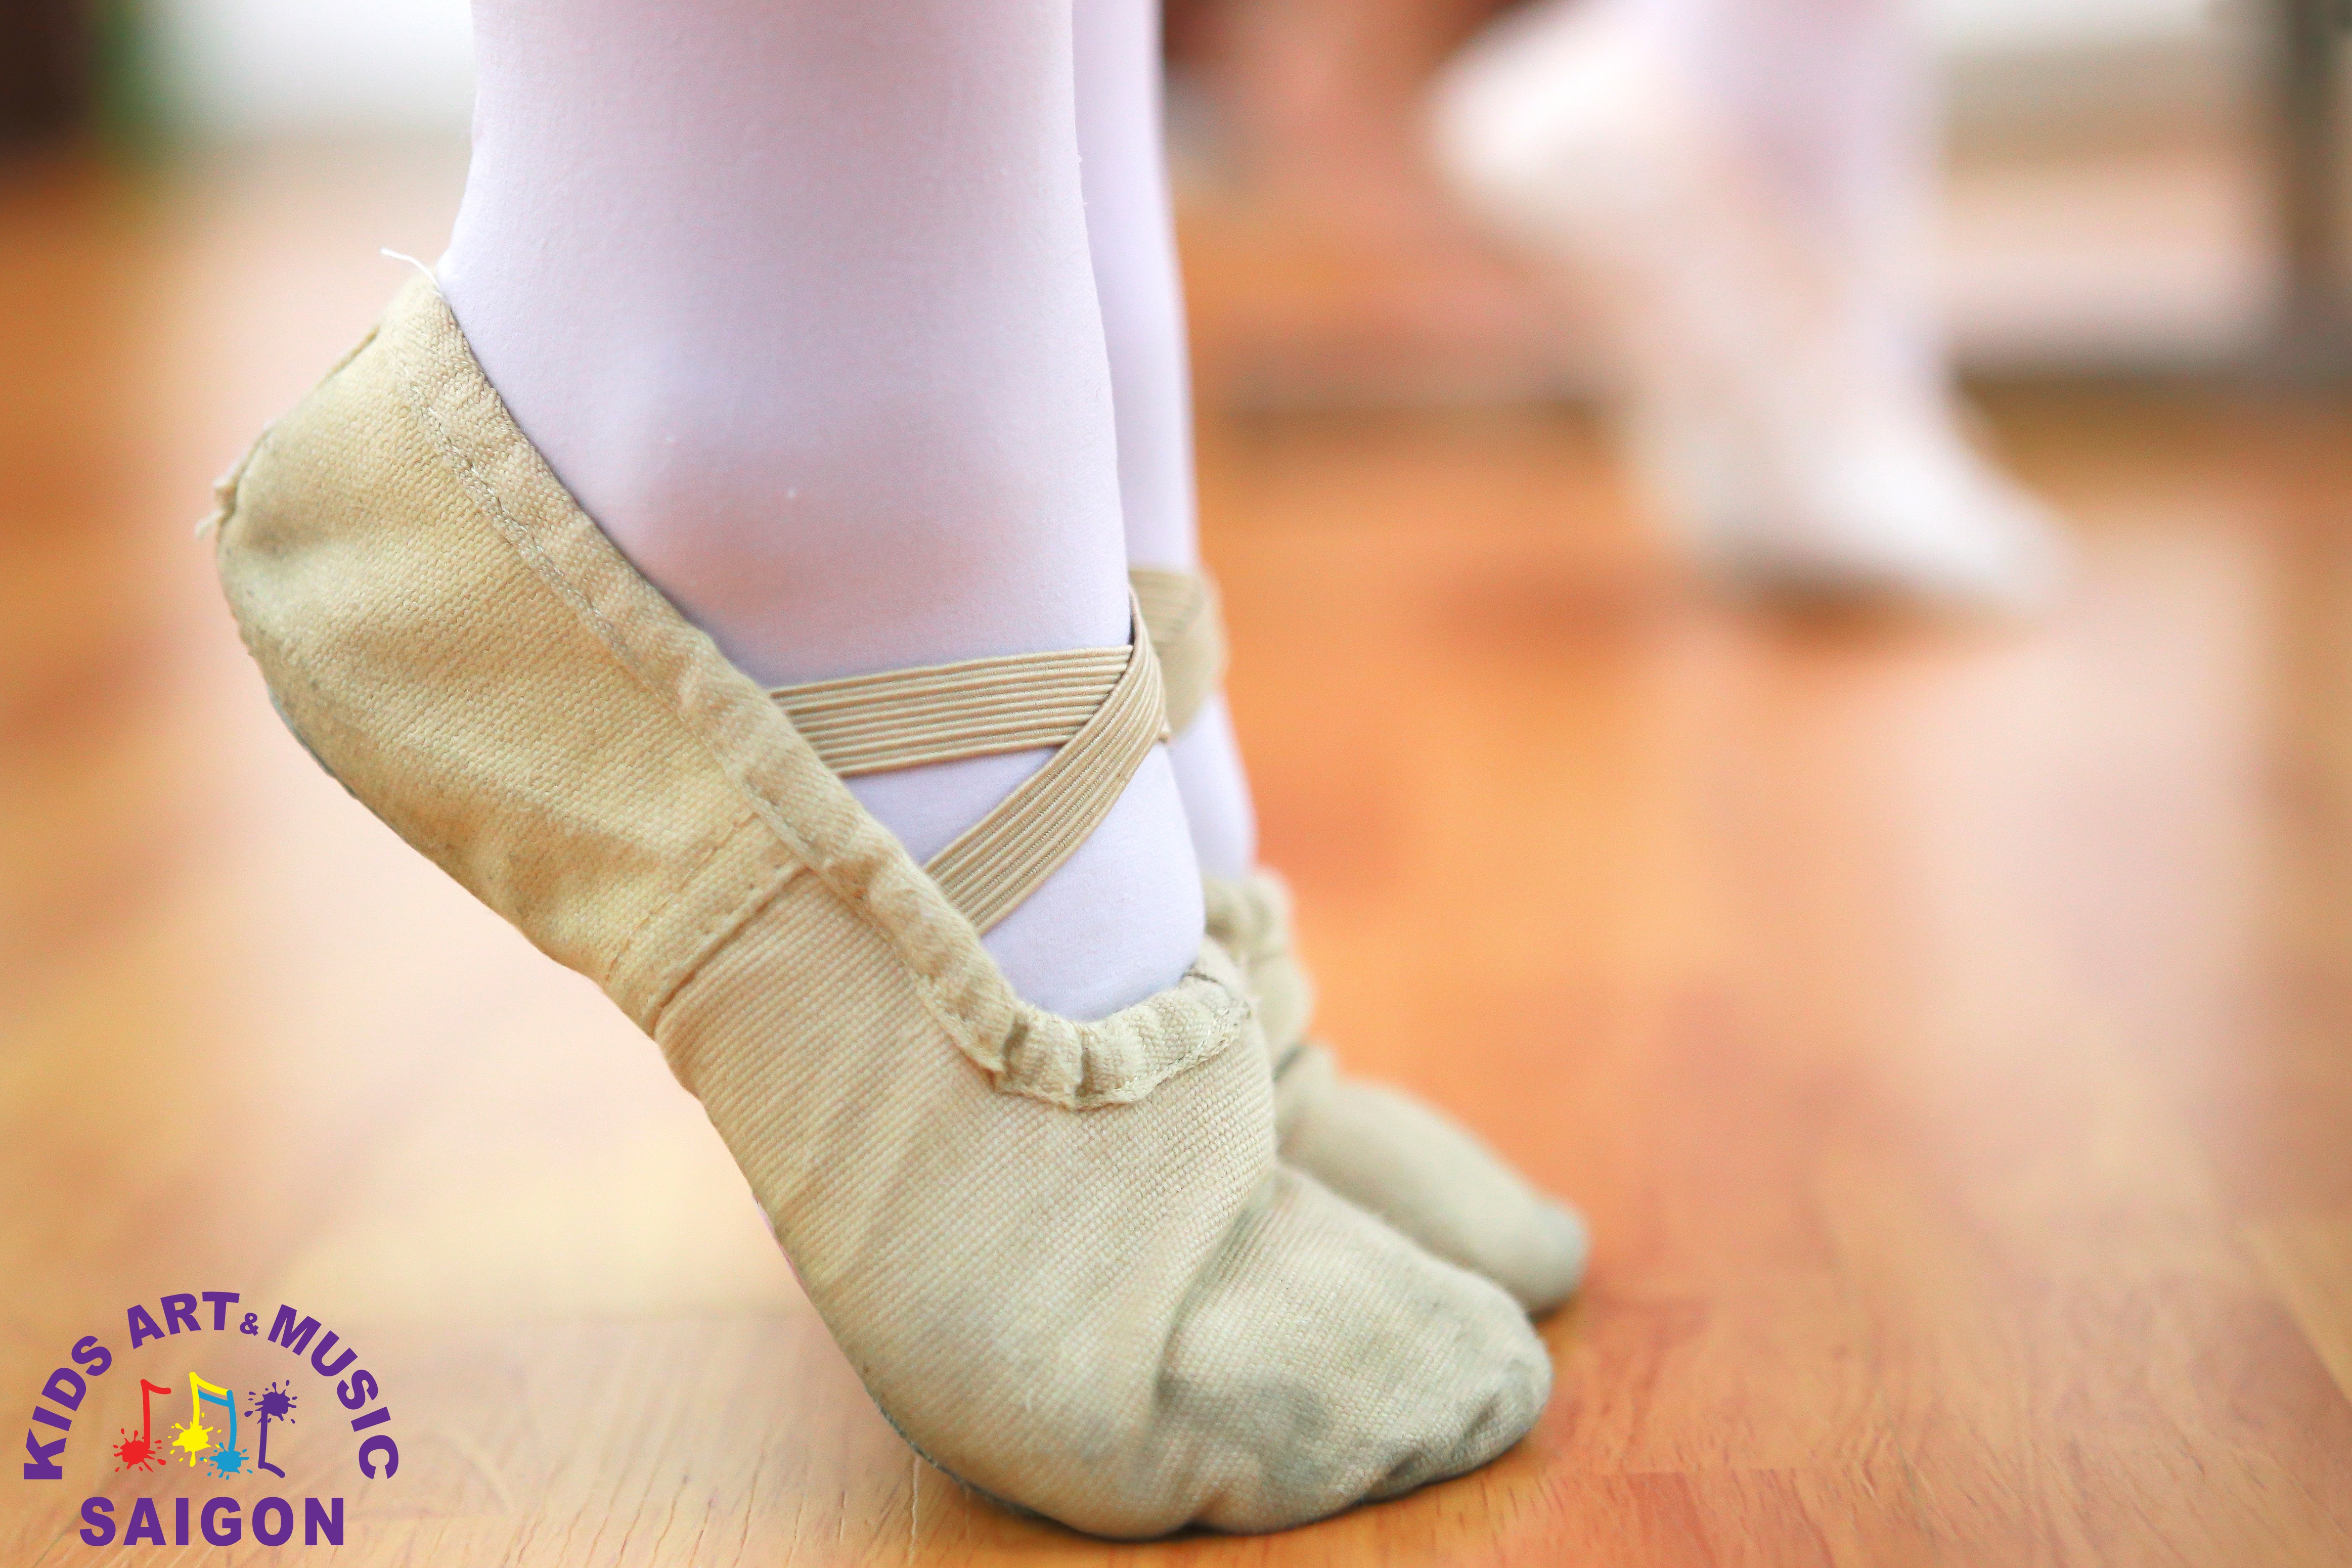 Hình 1 - Giày Ballet cho bé và cách lựa chọn giày phù hợp nhất